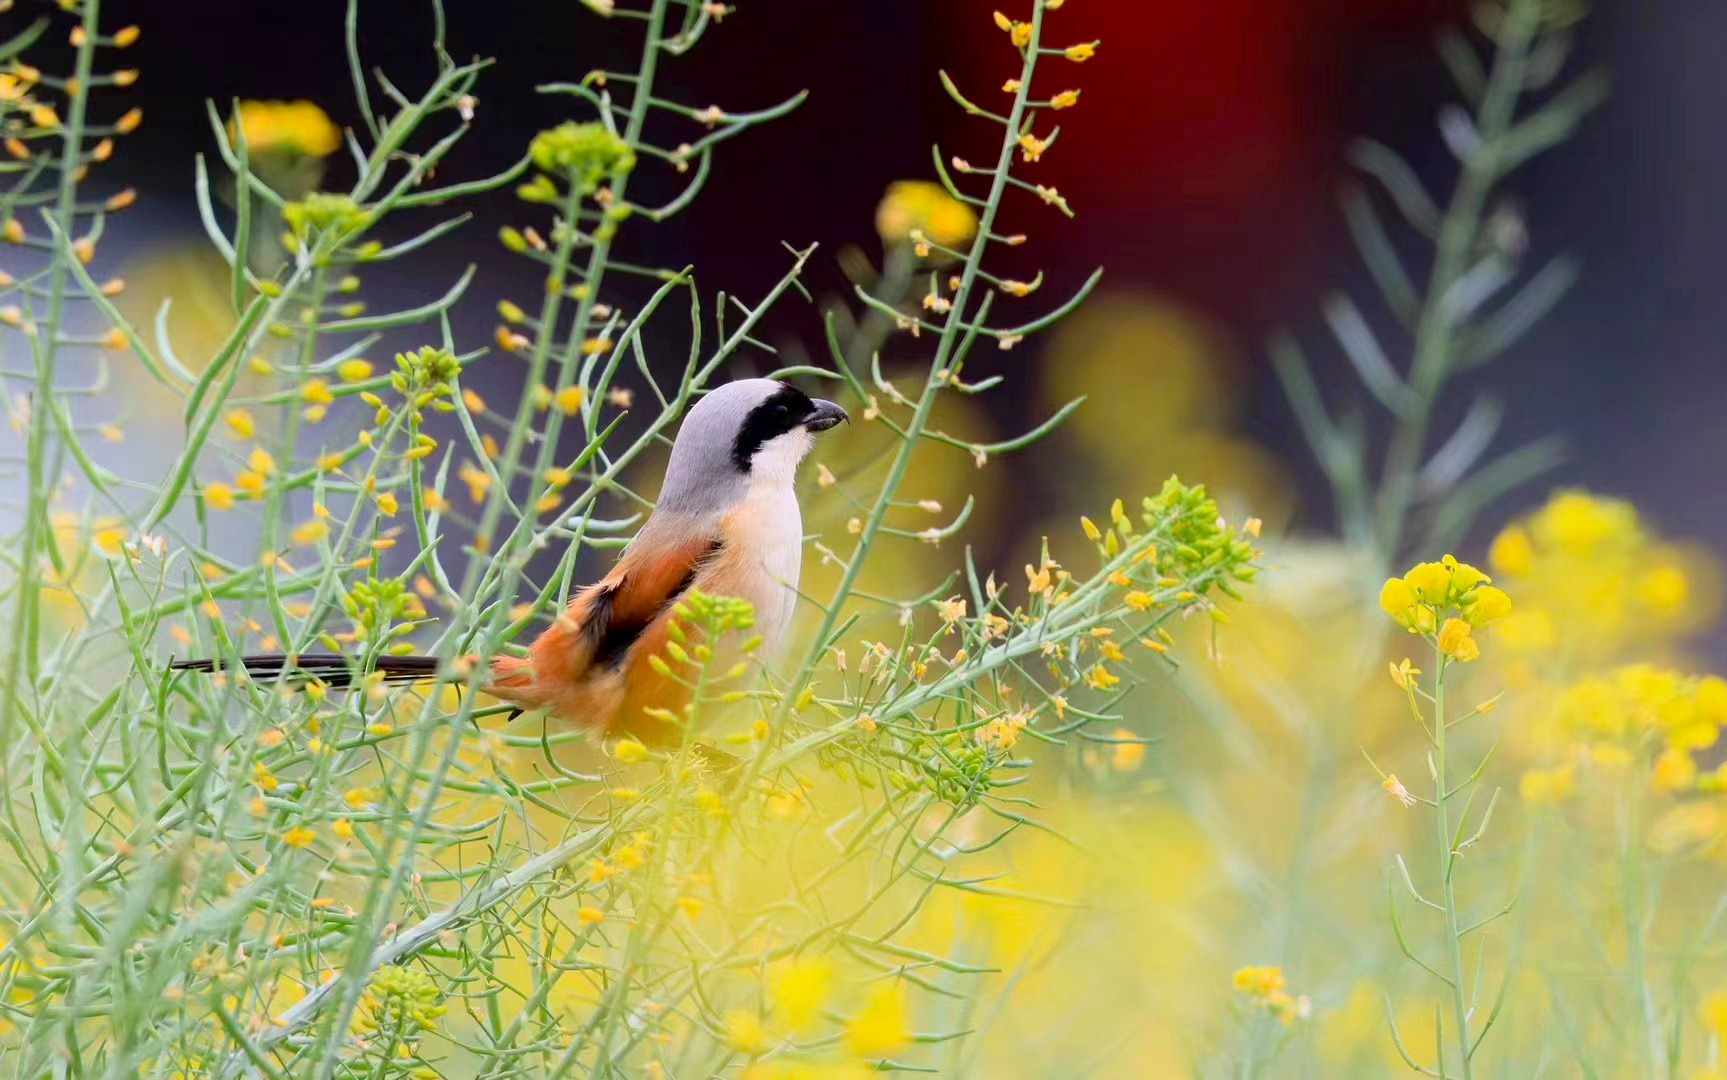 阳春三月，在东莞市横沥镇月塘湖周边湿地，越来越多的鸟儿到此栖息觅食，形成一幅美丽的自然生态画卷，为春日增添了生机。（摄影：张赐强）